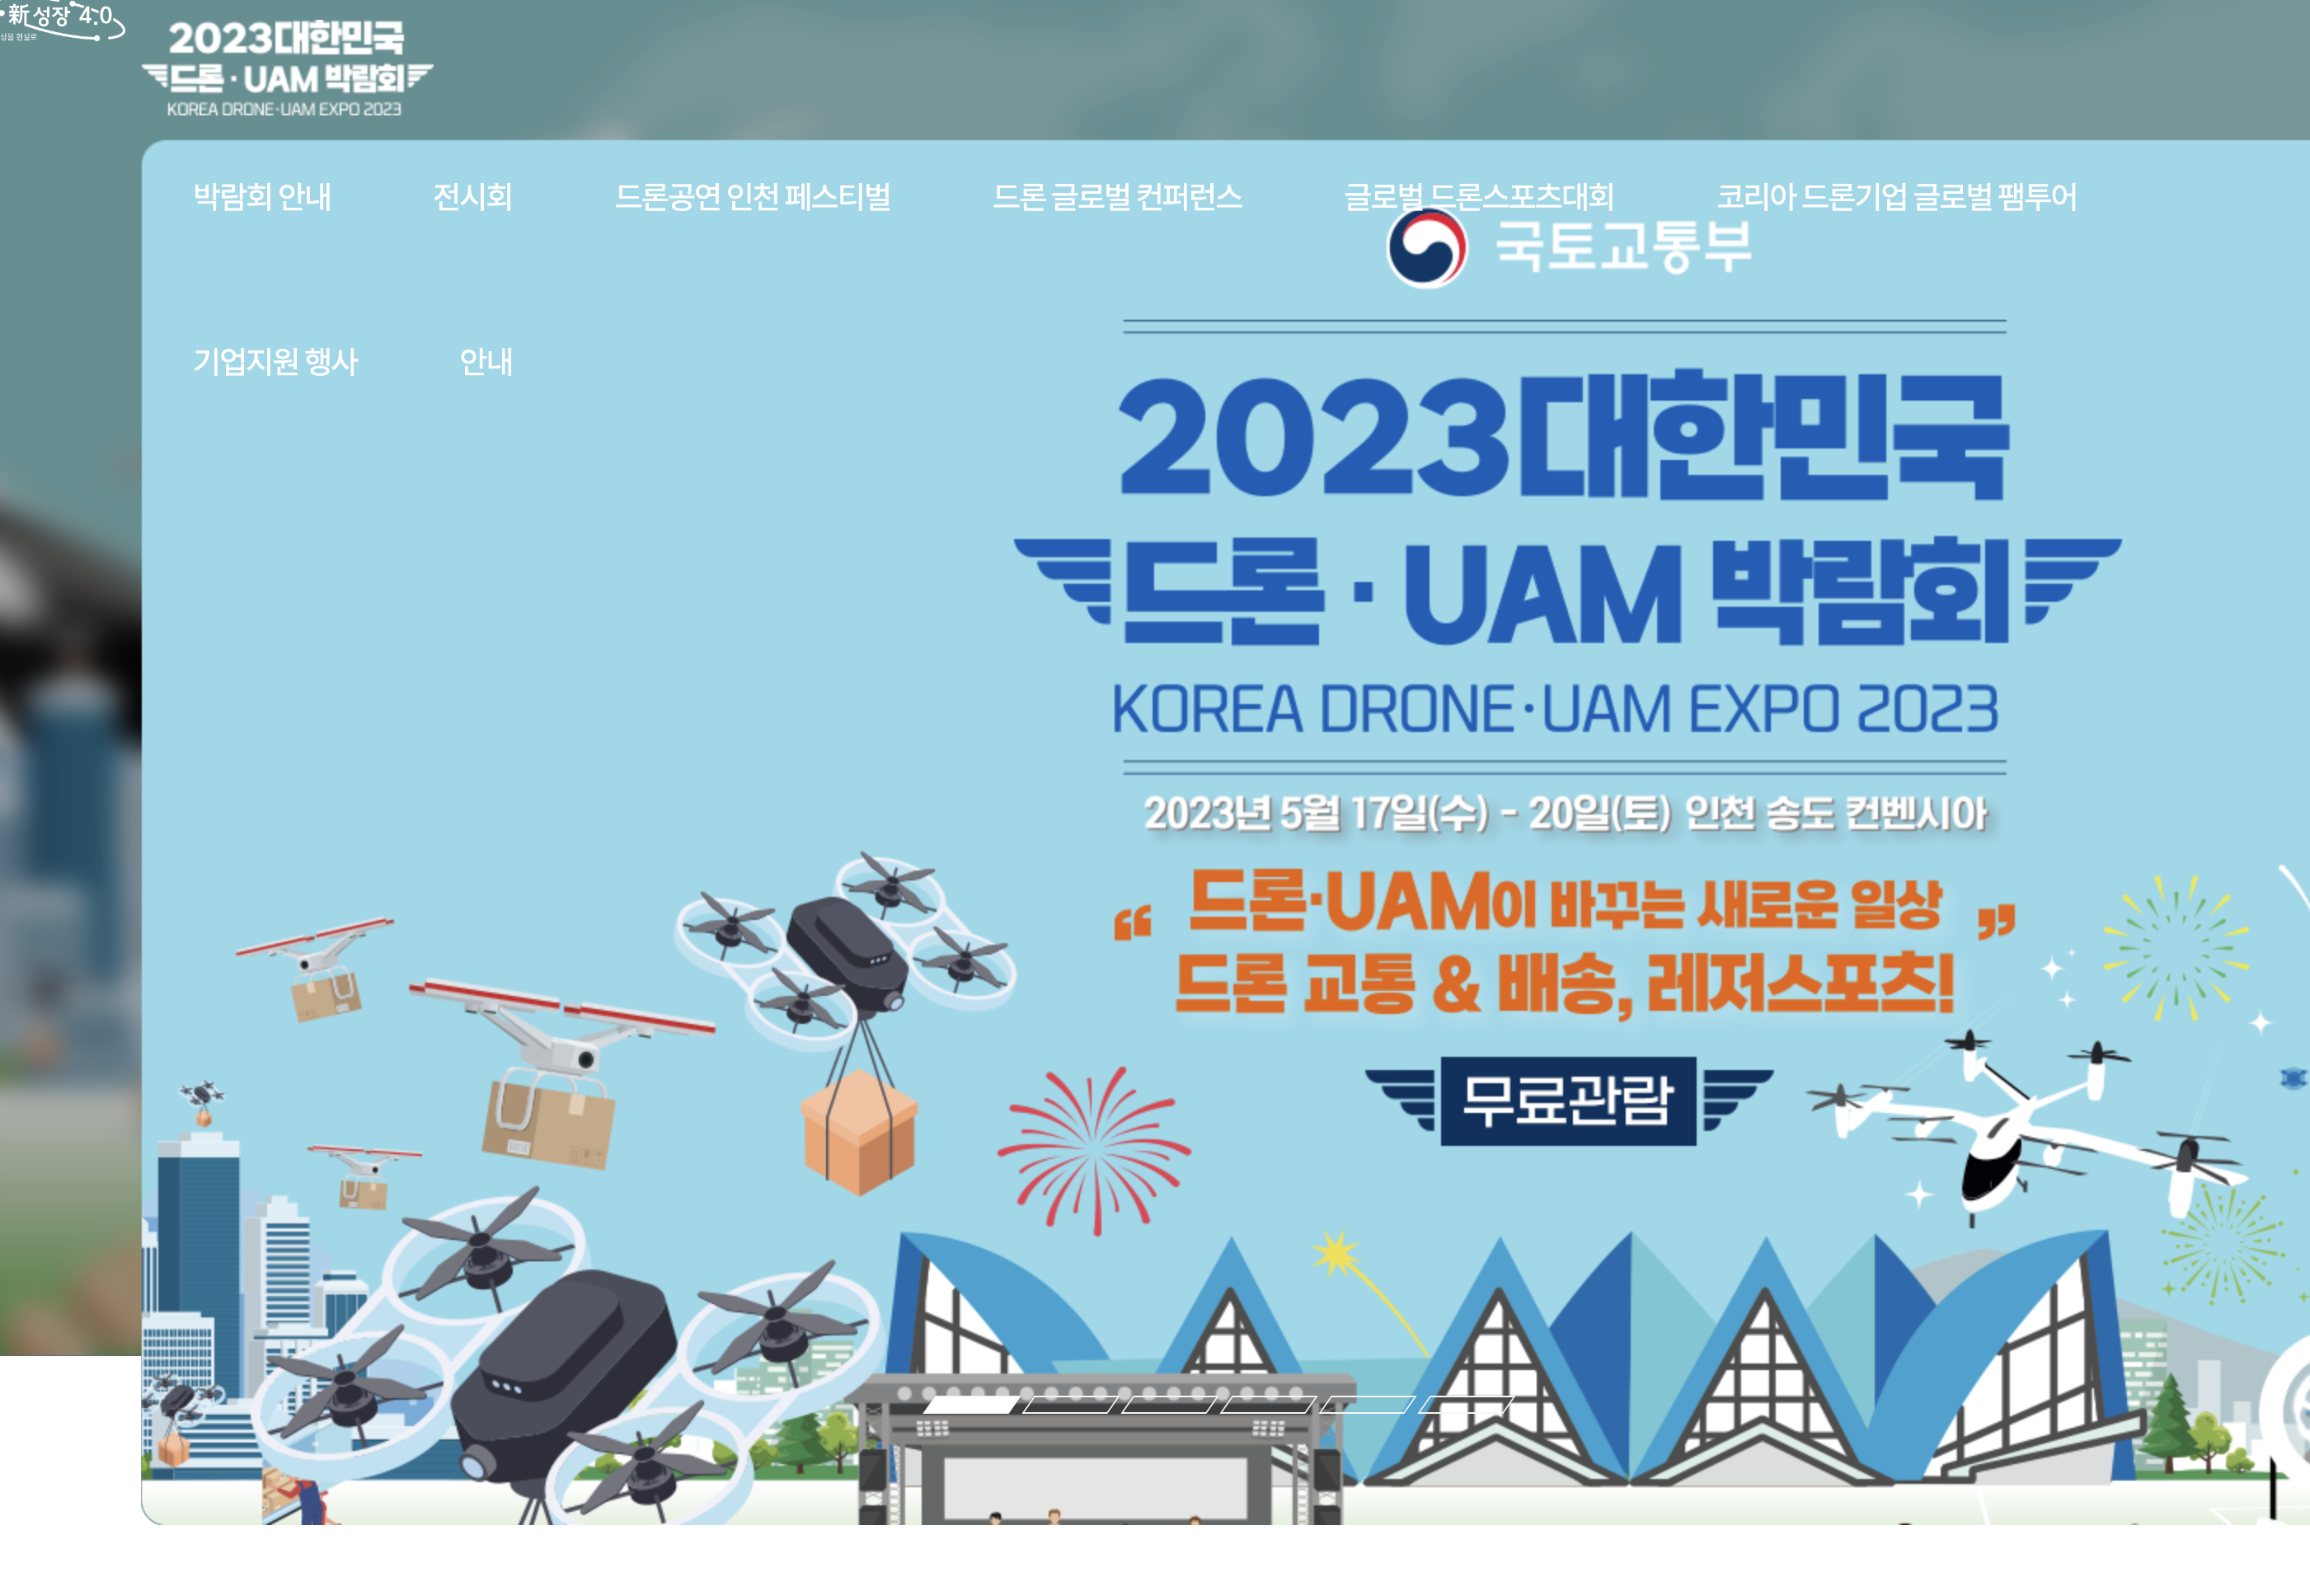 2023년 대한민국 드론 UAM 박람회